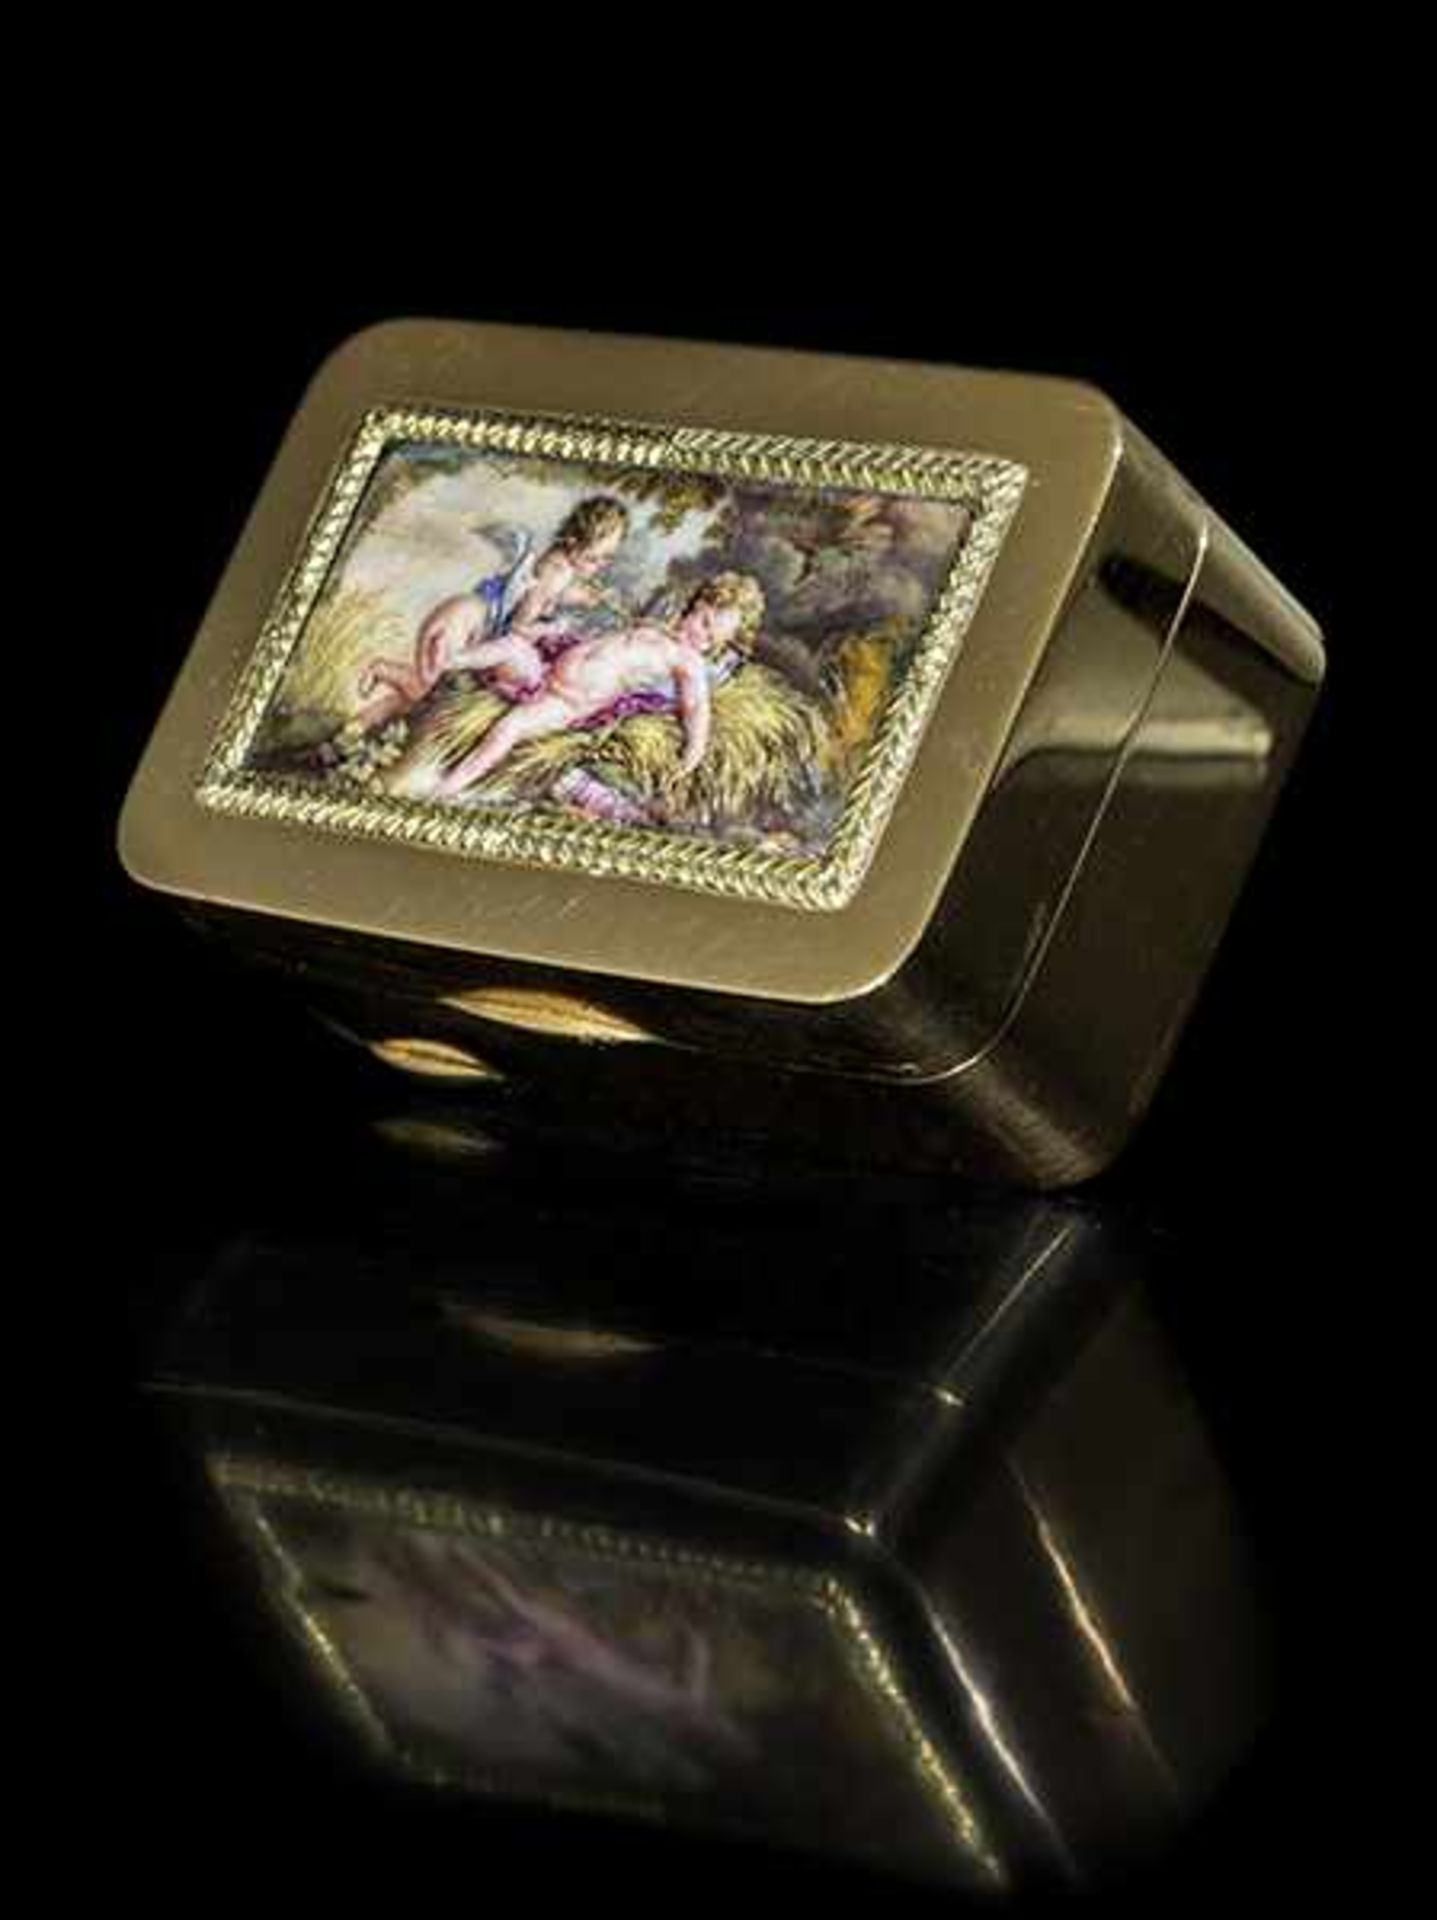 Römische Golddose mit Puttominiatur 2 x 5 x 3,3 cm. Gewicht: 61 g. Steckkante mit - Bild 4 aus 5